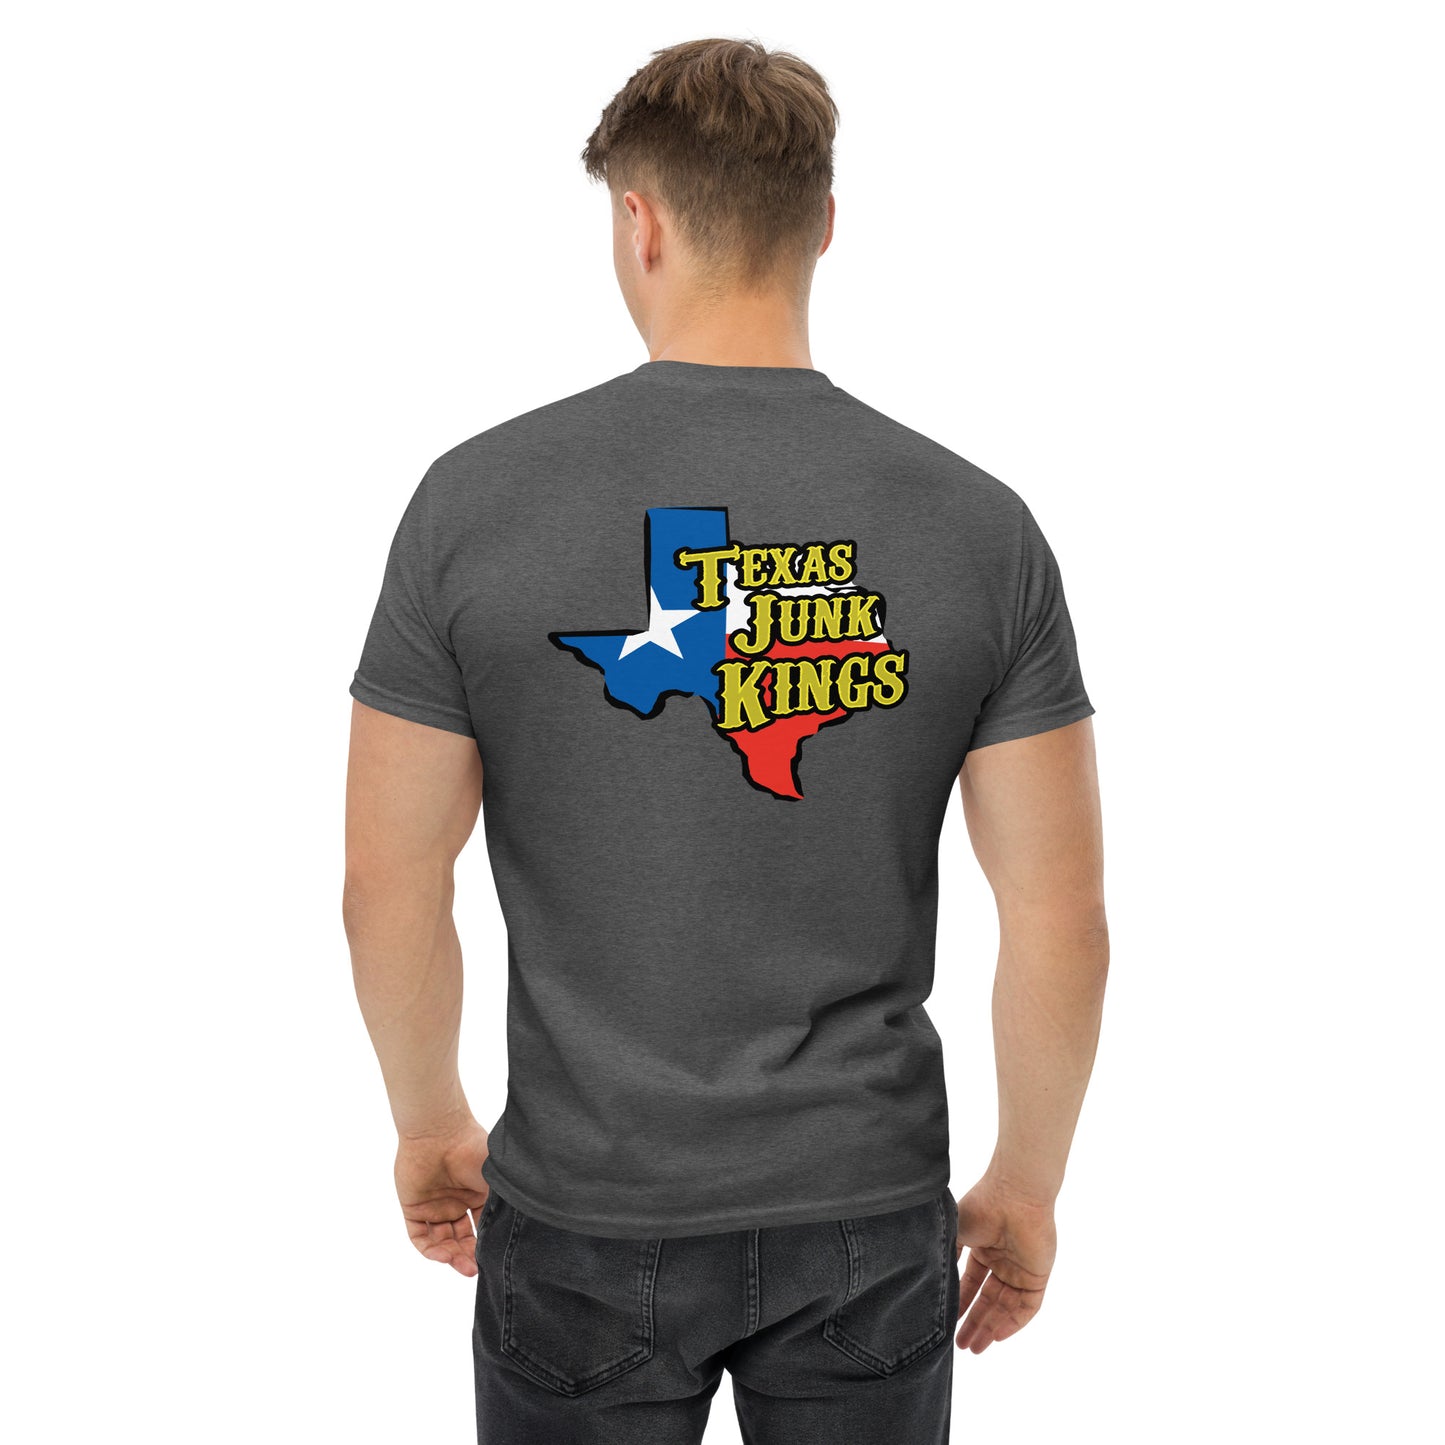 Texas Junk Kings